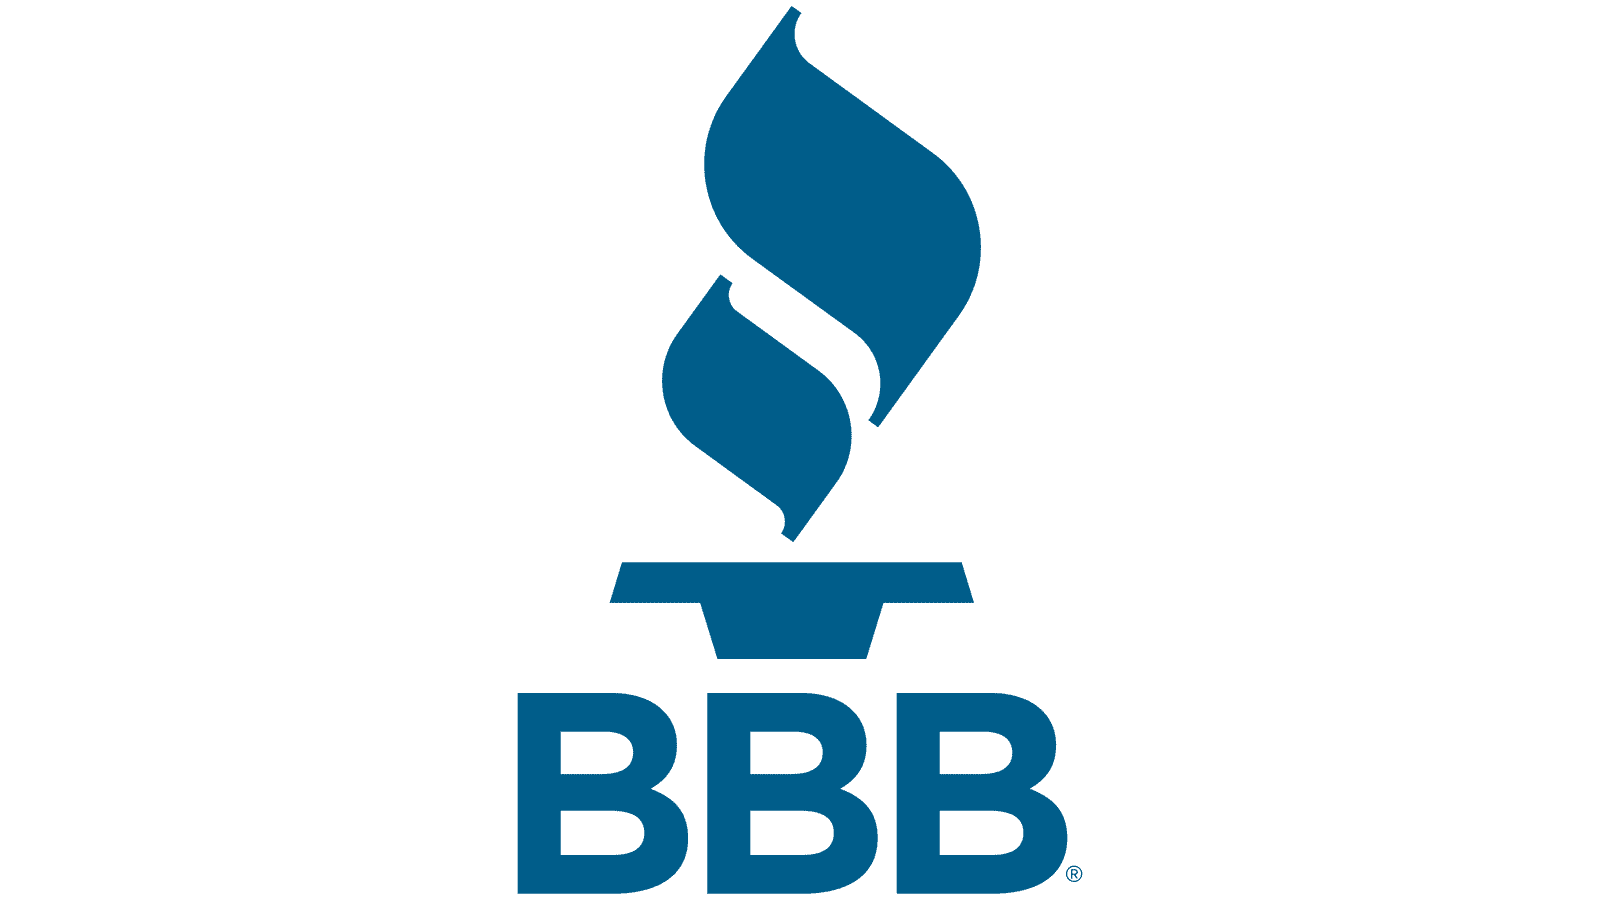 logo de better business bureau en alto